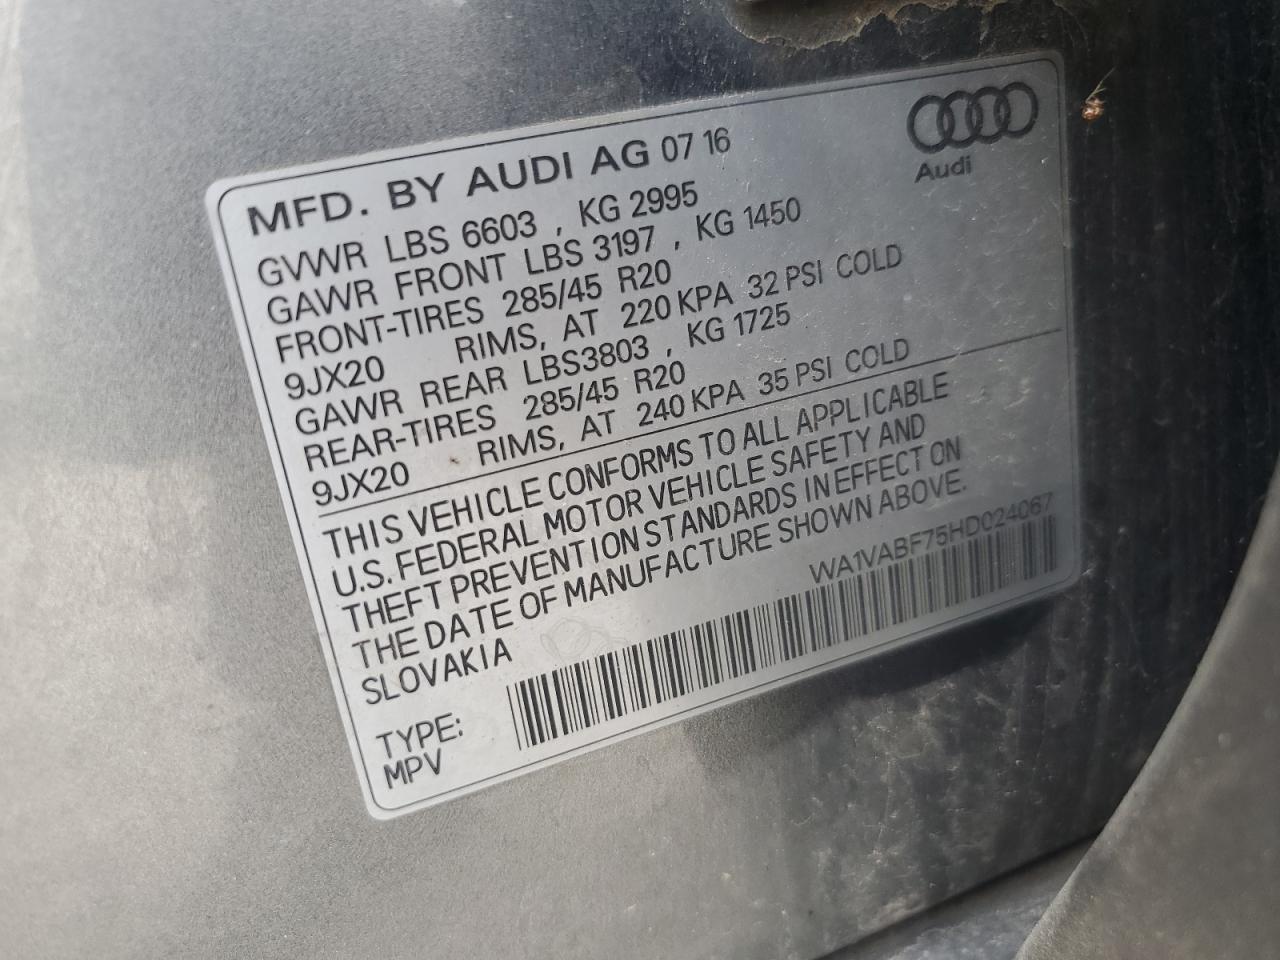 2017 Audi Q7 Prestige VIN: WA1VABF75HD024067 Lot: 64805114